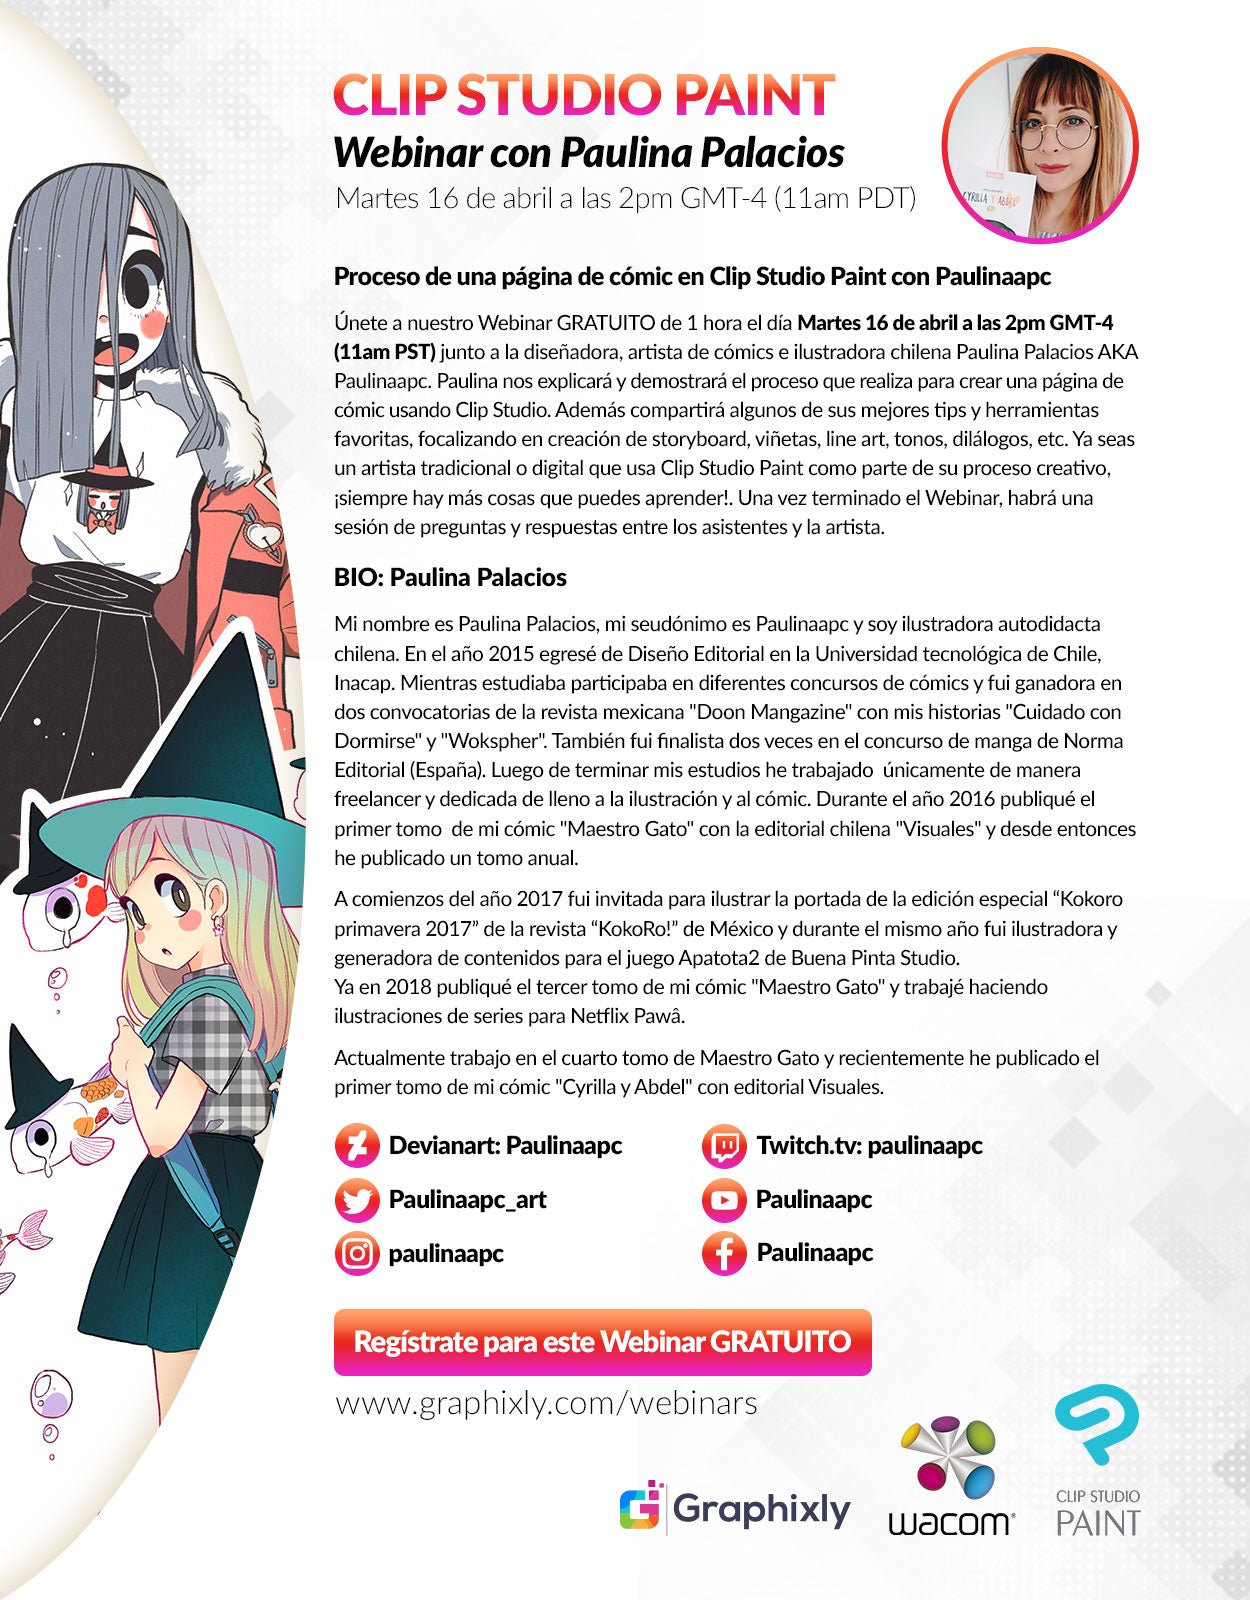 Webinar en español - Proceso de una página de cómic en Clip Studio Paint con Paulina Palacios